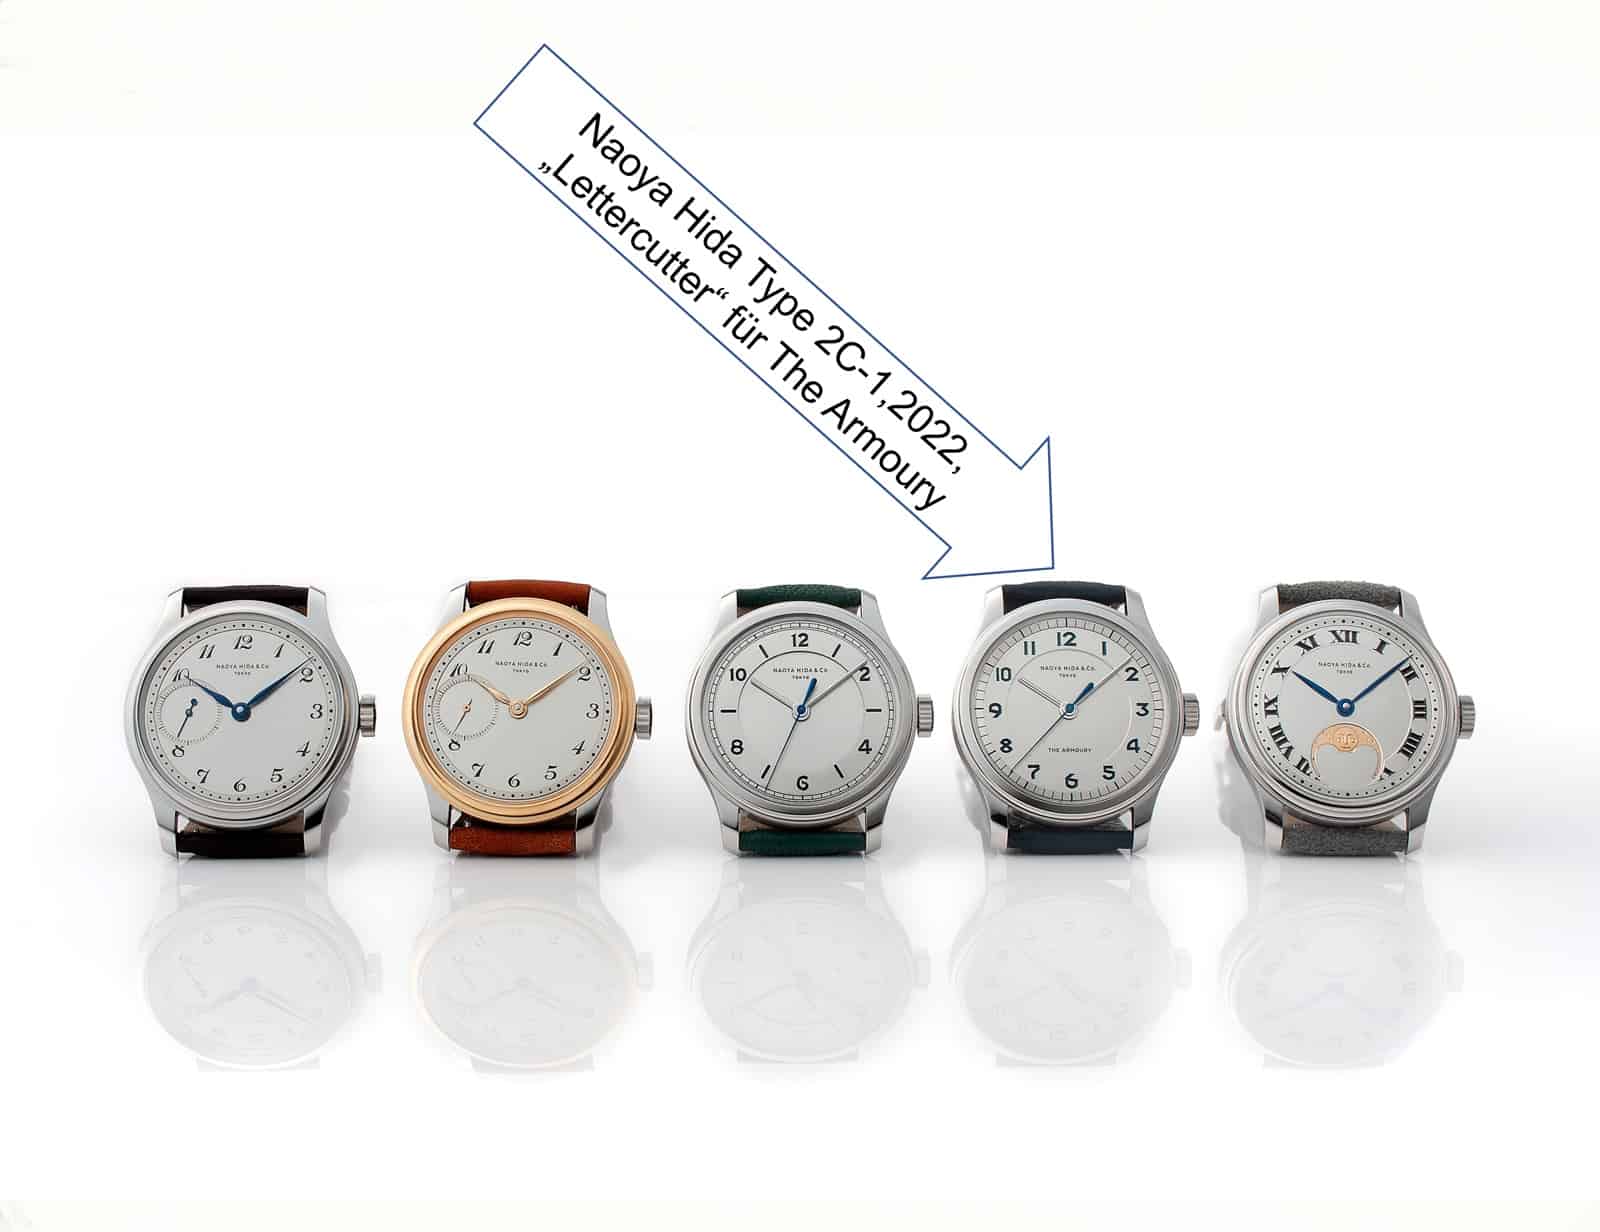 Uhren von Naoya Hida Typ 1, 2 und 3